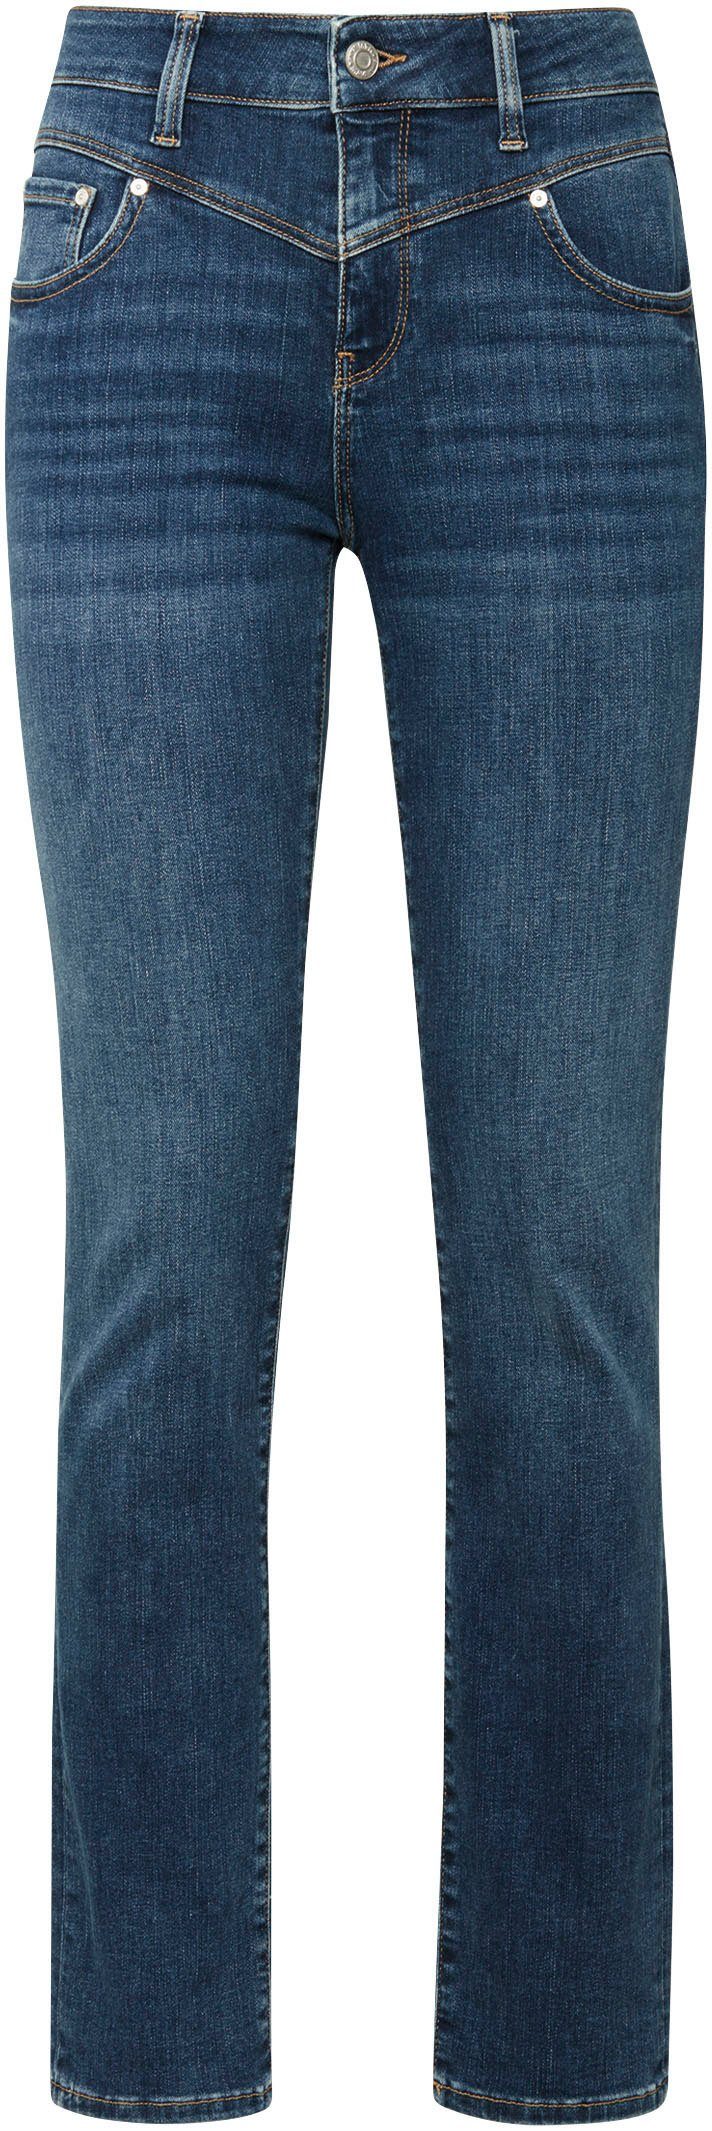 Mavi Slim-fit-Jeans trageangenehmer hochwertiger shaded dank (mid Stretchdenim blue mid blue) Verarbeitung